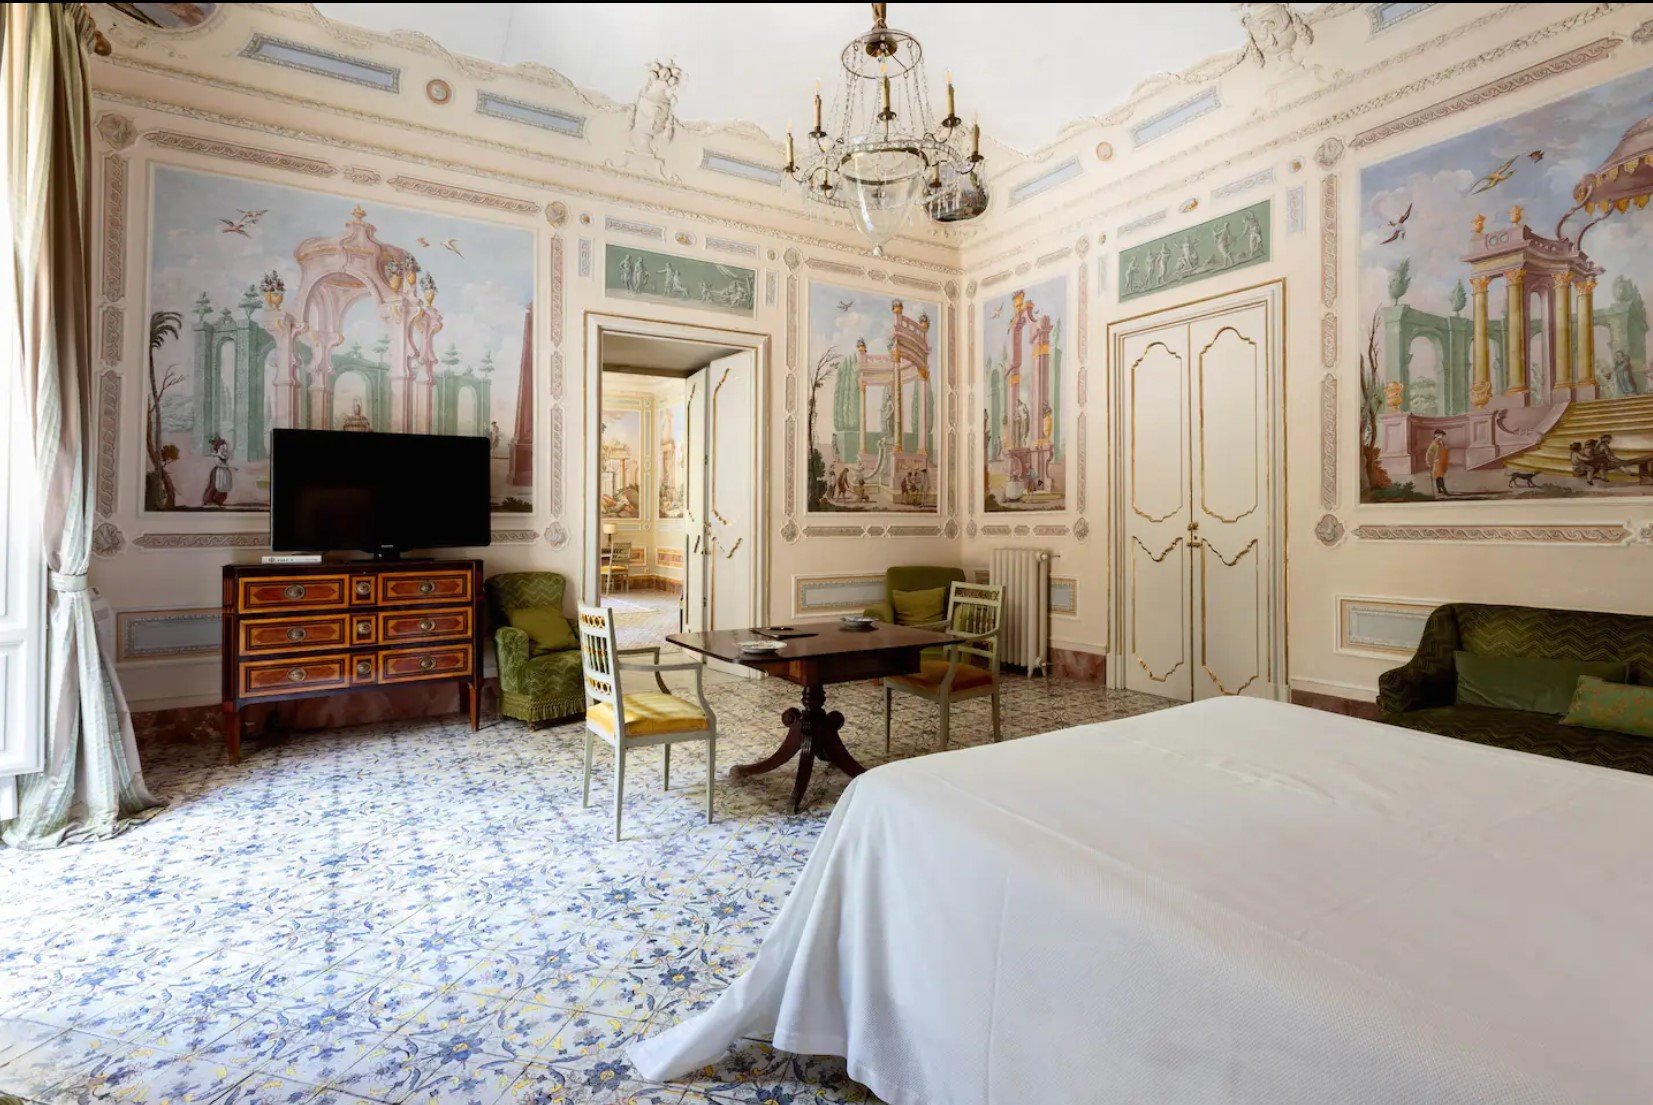 villa tasca tv in large bedroom.jpg